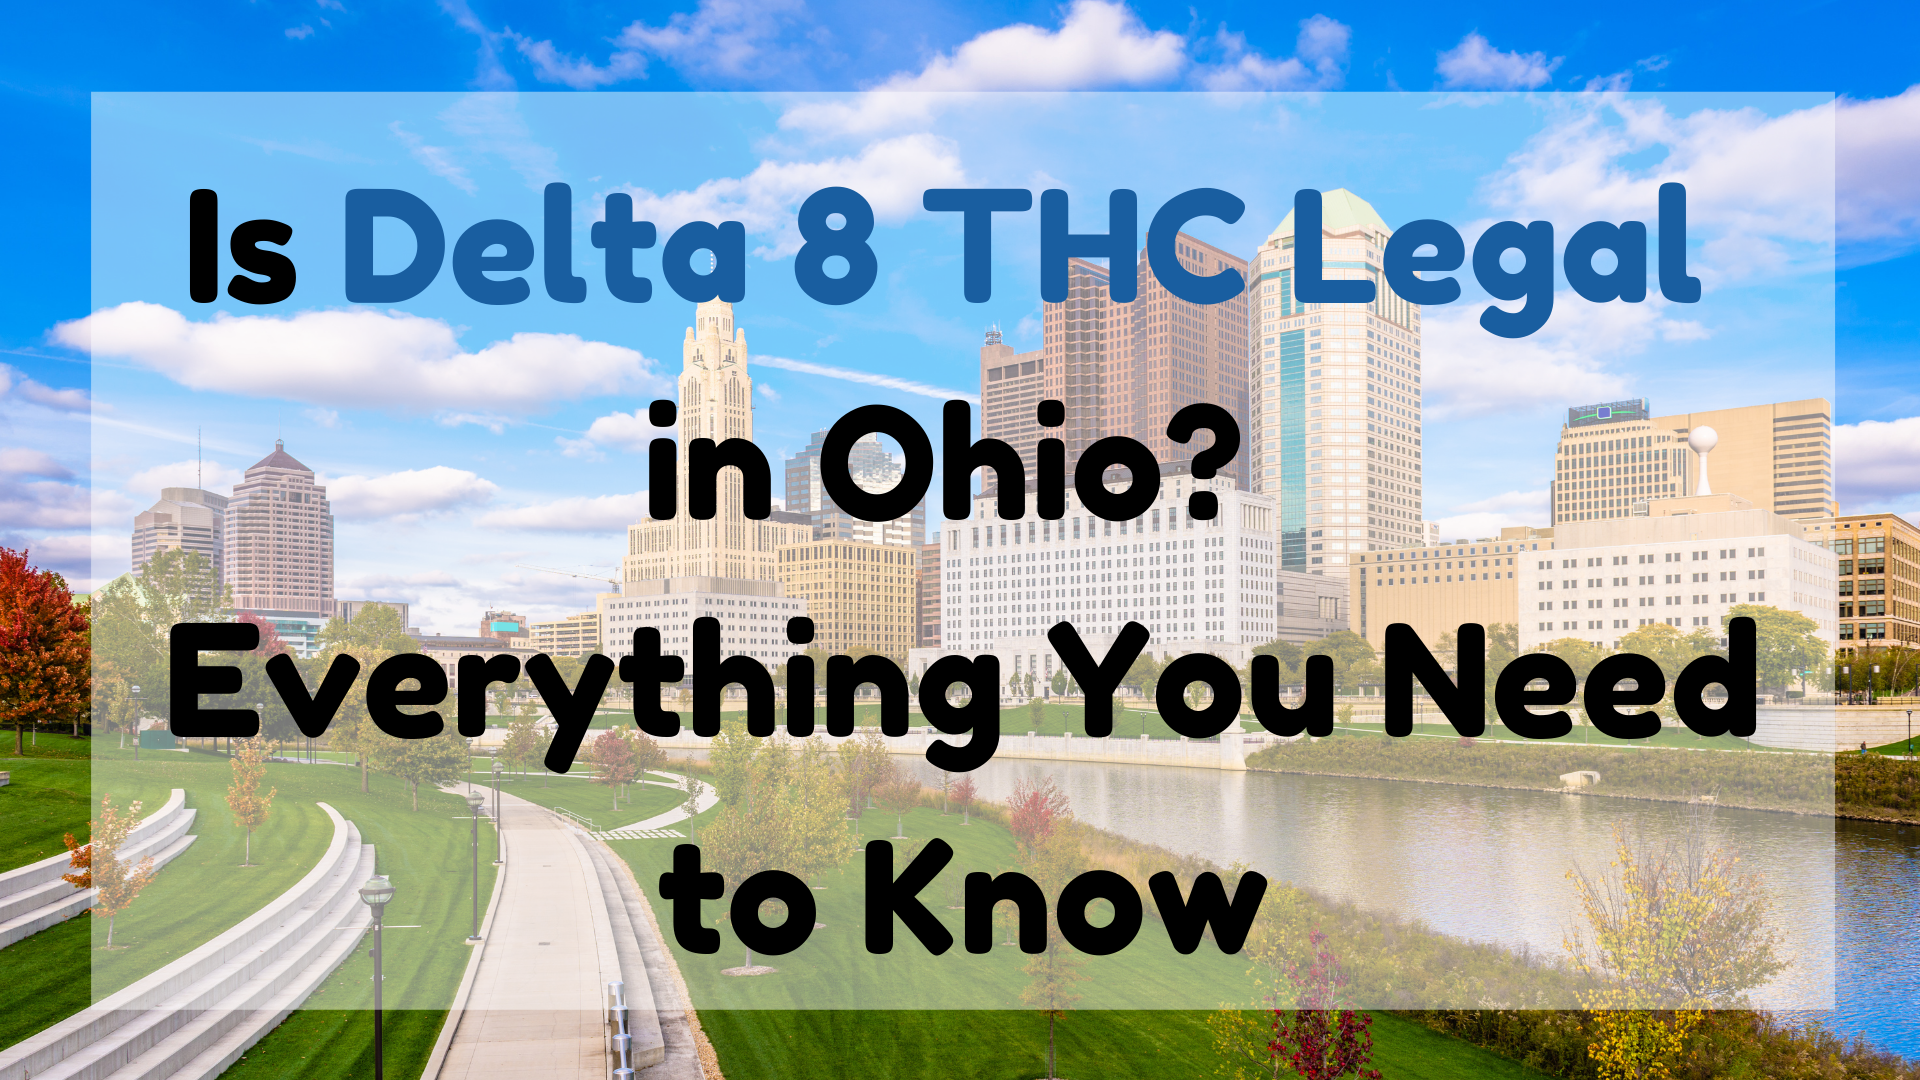 Is Delta 8 THC Legal in Ohio